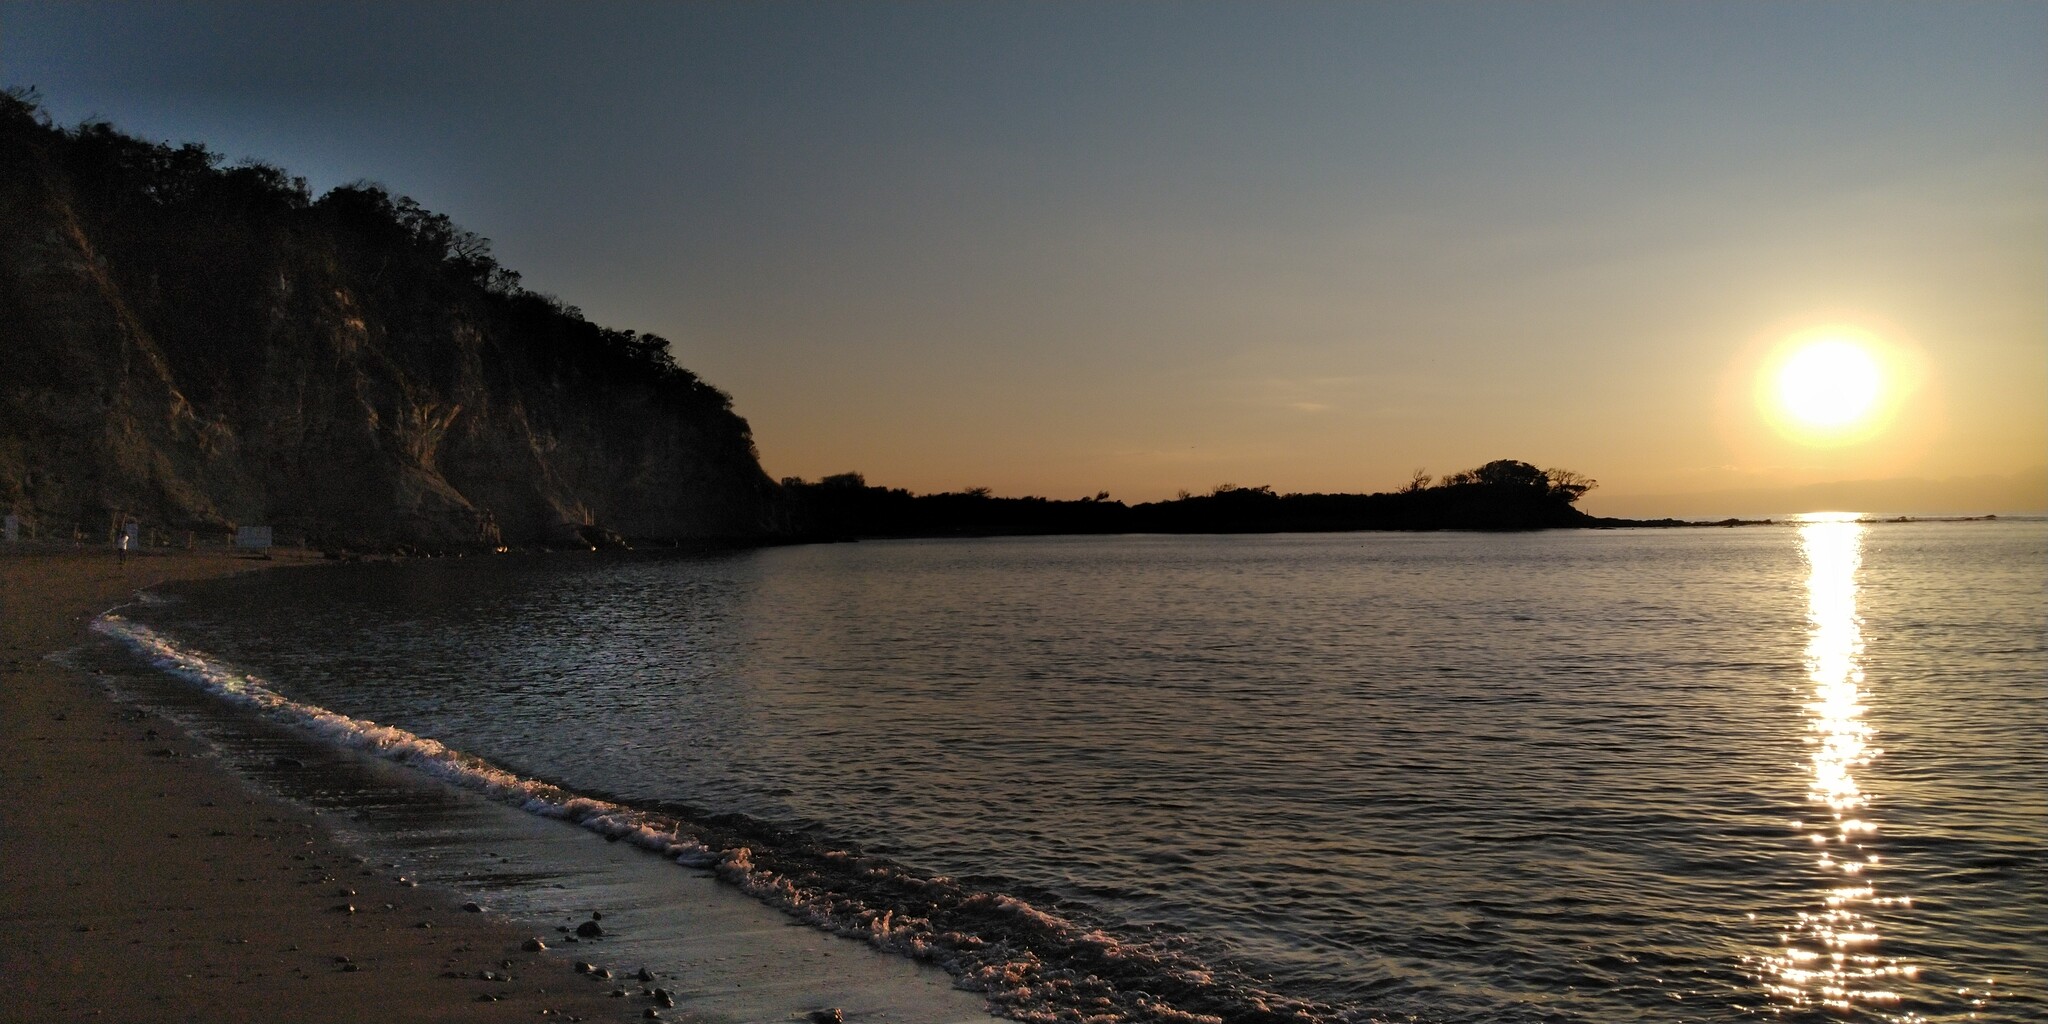 長者ヶ崎海水浴場 神奈川の景勝50選の一つ 大浜海岸 歴史オタクの郷土史グルメ旅 久良岐のよし